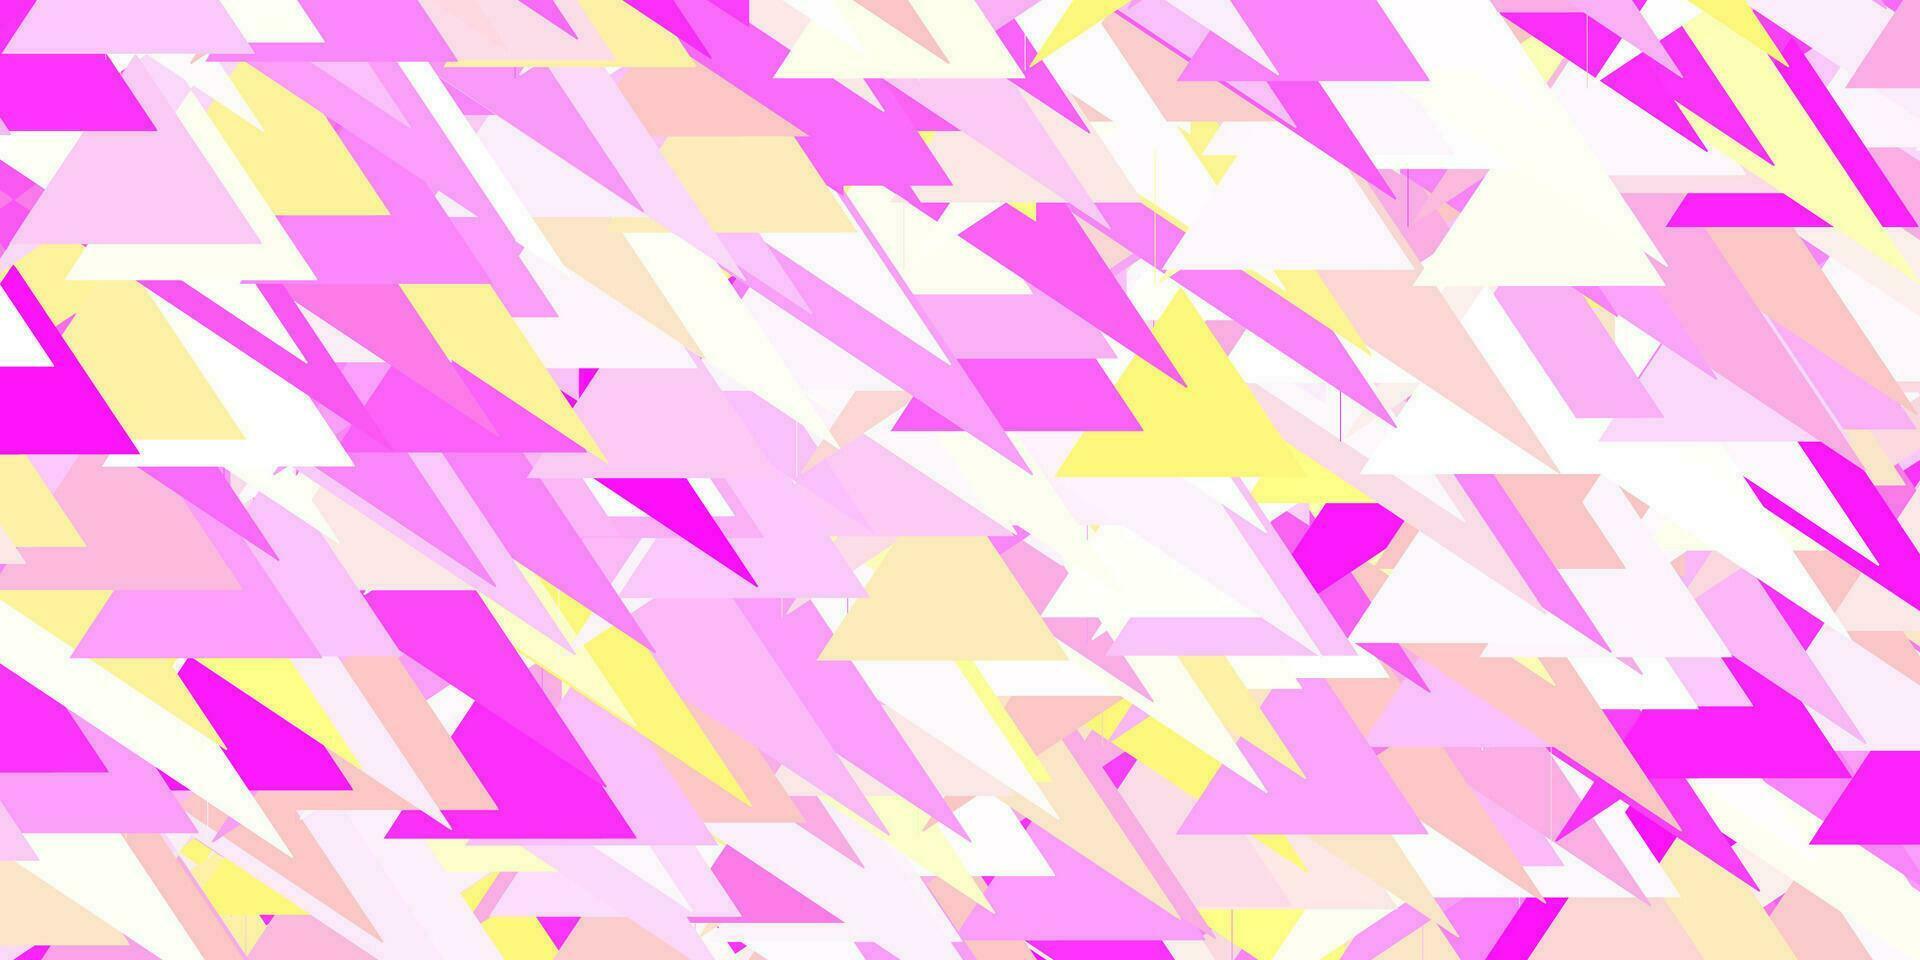 layout vettoriale rosa chiaro, giallo con forme triangolari.